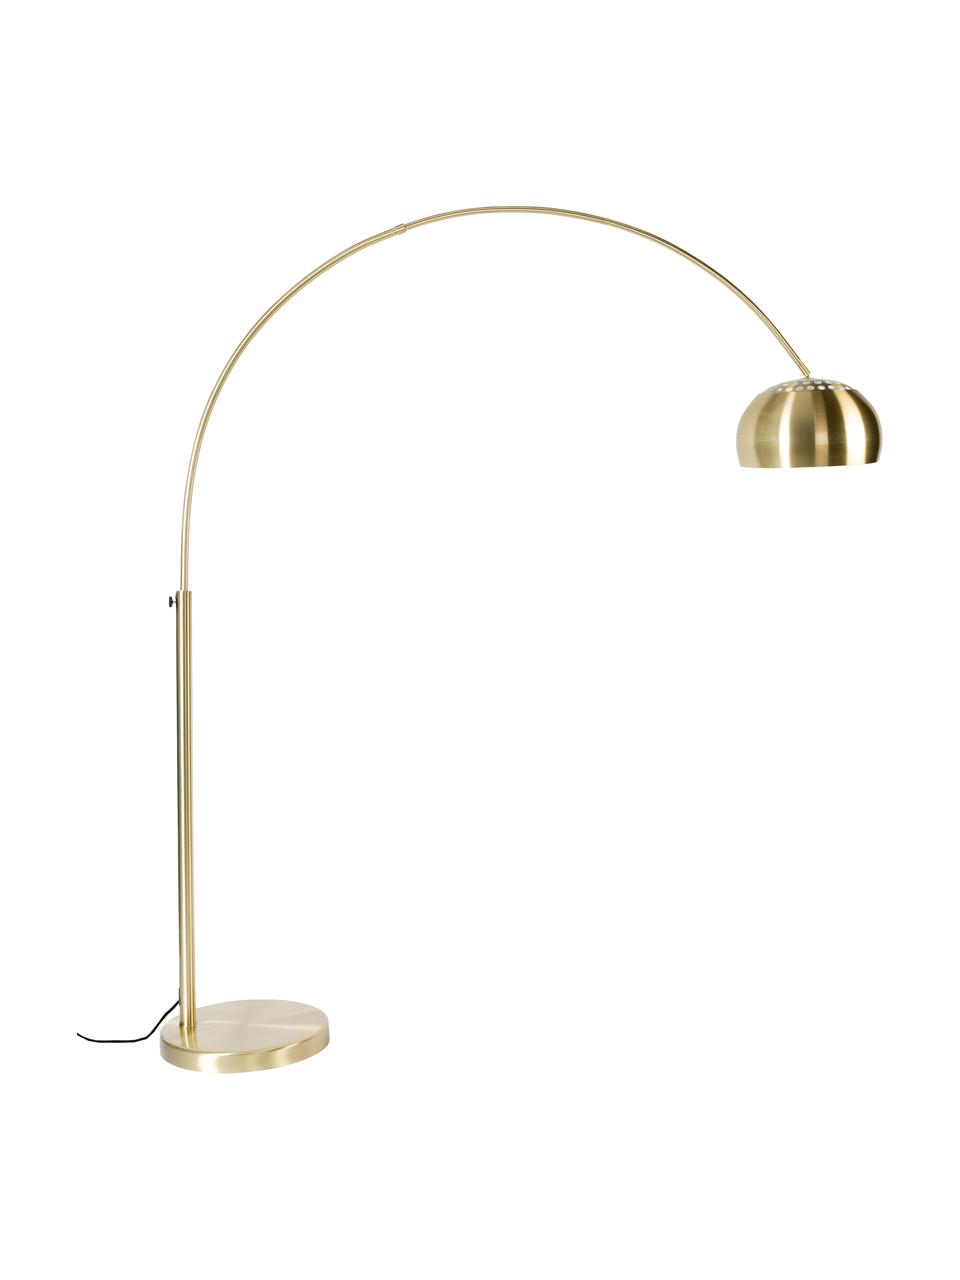 Lampa podłogowa w kształcie łuku Metal Bow, Stelaż: metal mosiądzowany, Odcienie mosiądzu, S 170 x W 205 cm